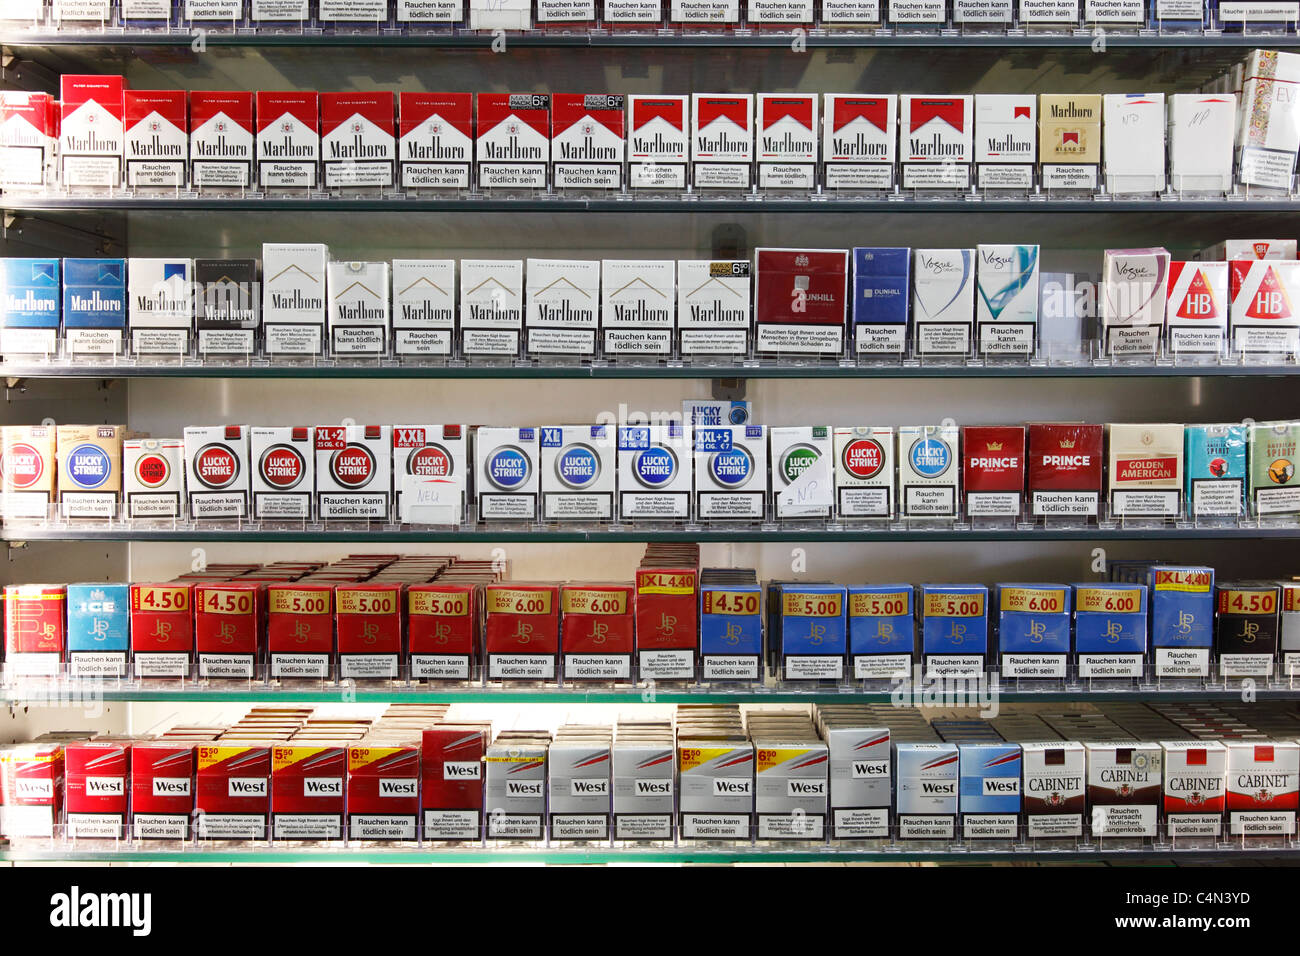 cigarettes shelf in a store Stock Photo